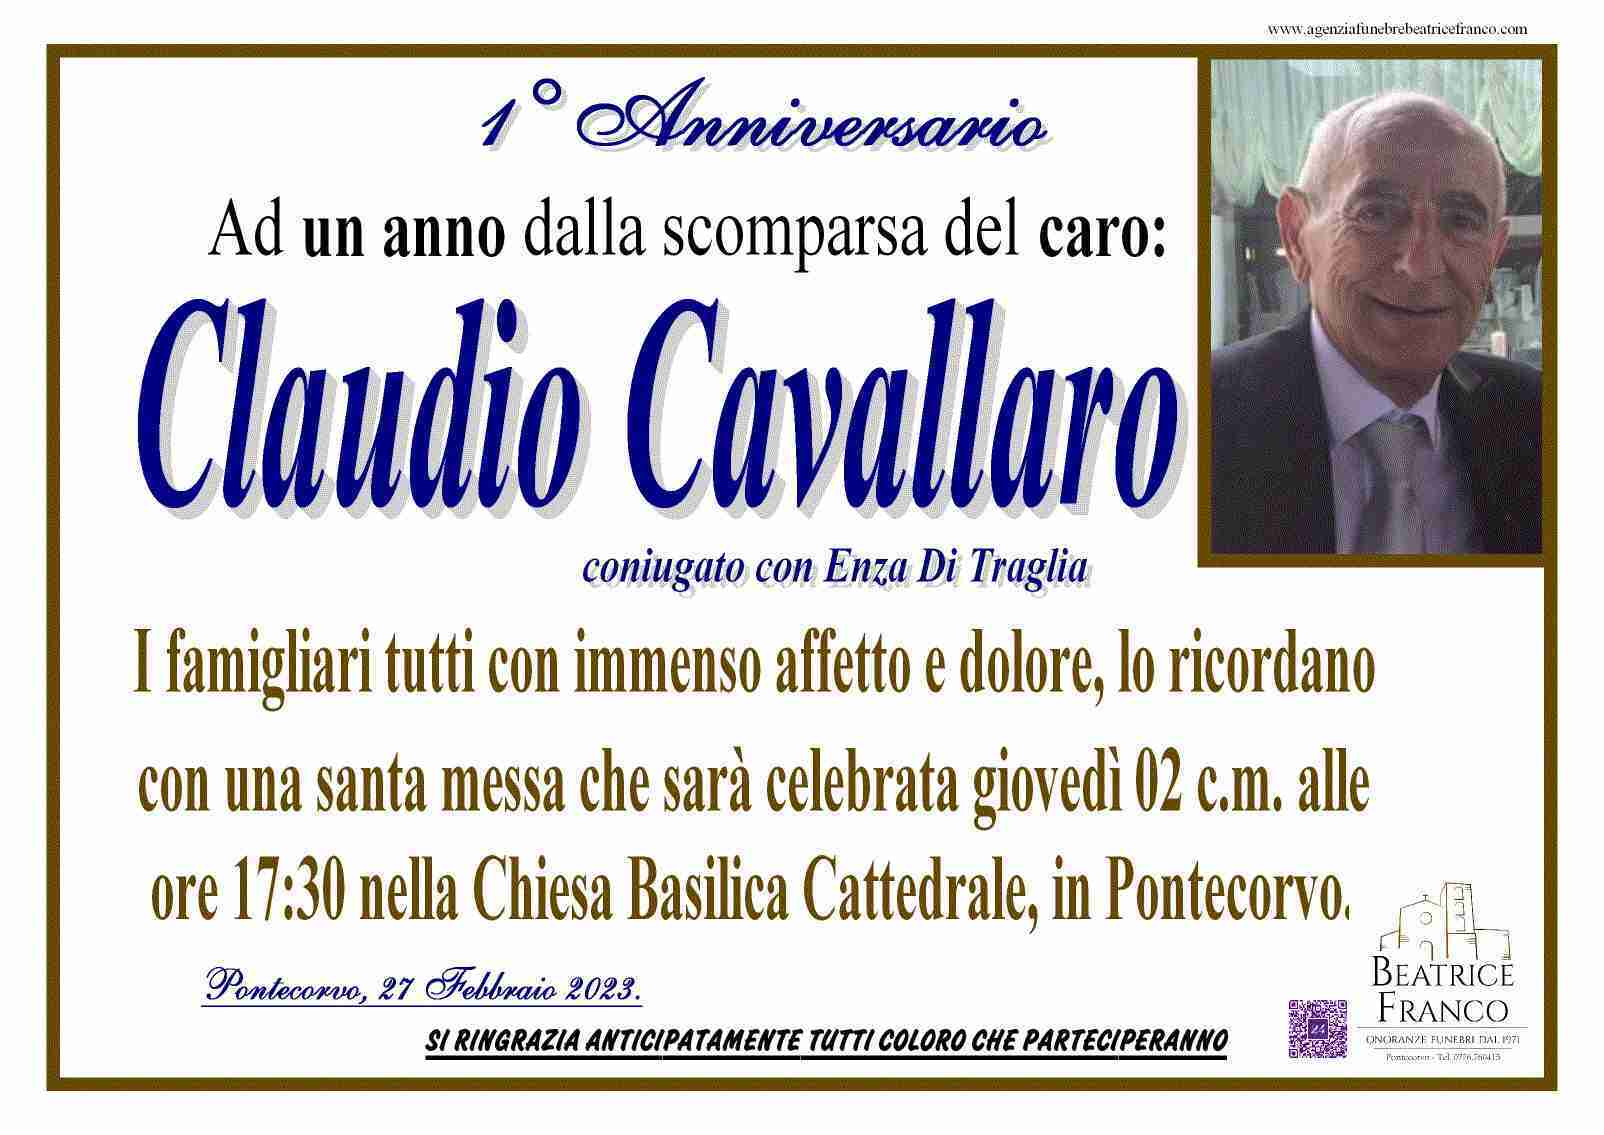 Claudio Cavallaro